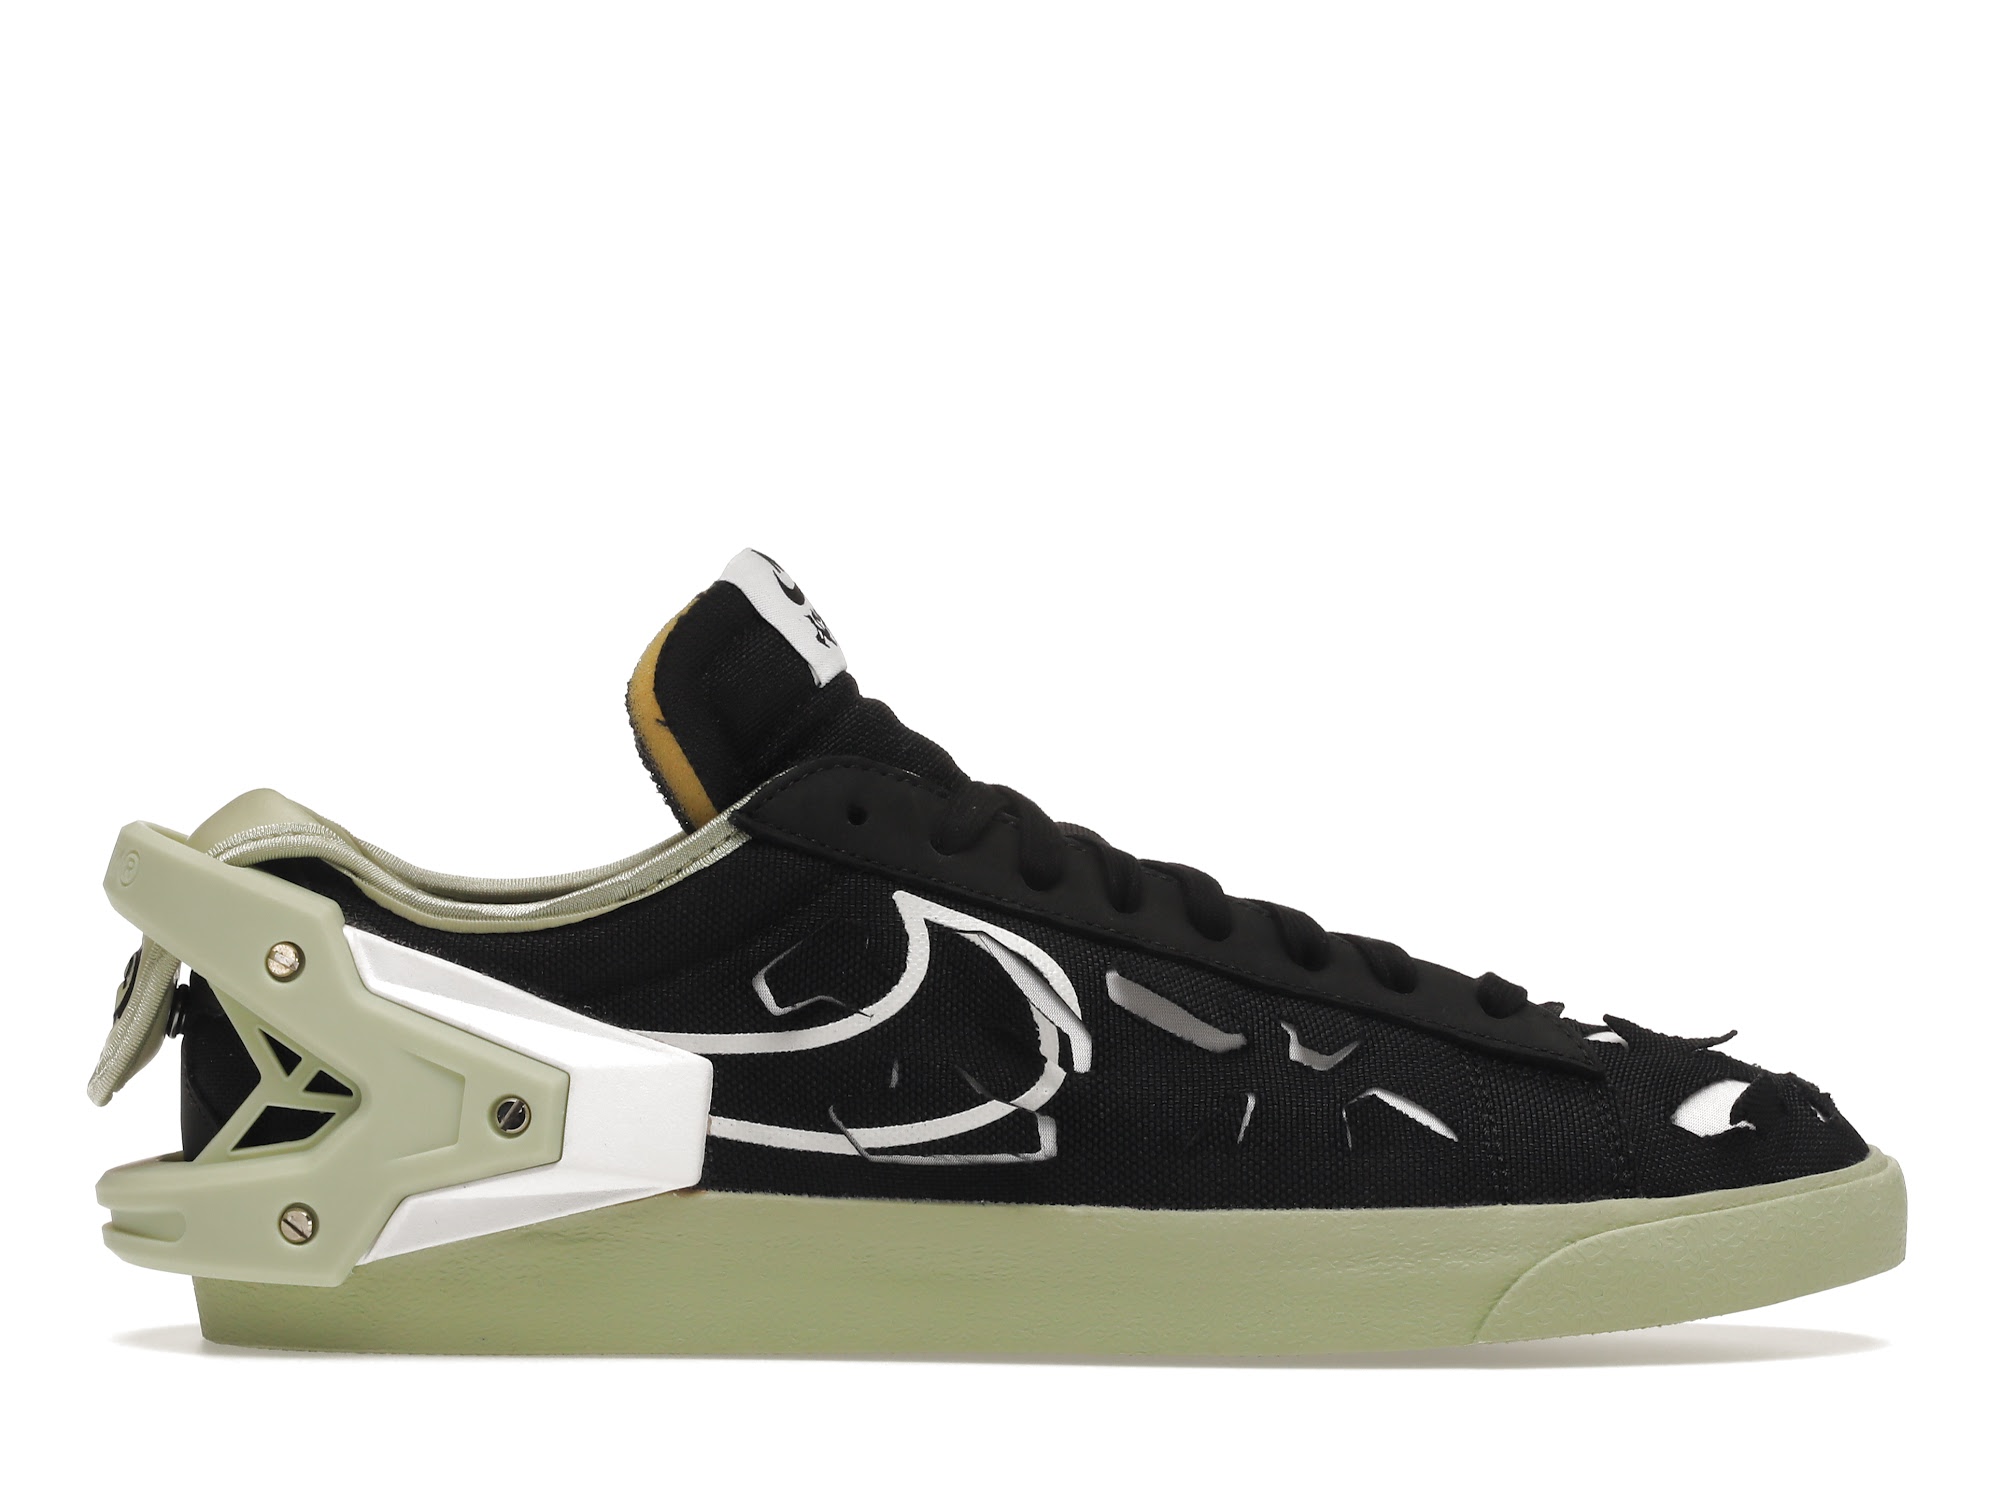 ACRONYM × Nike Blazer Low "Black" 27.0cm